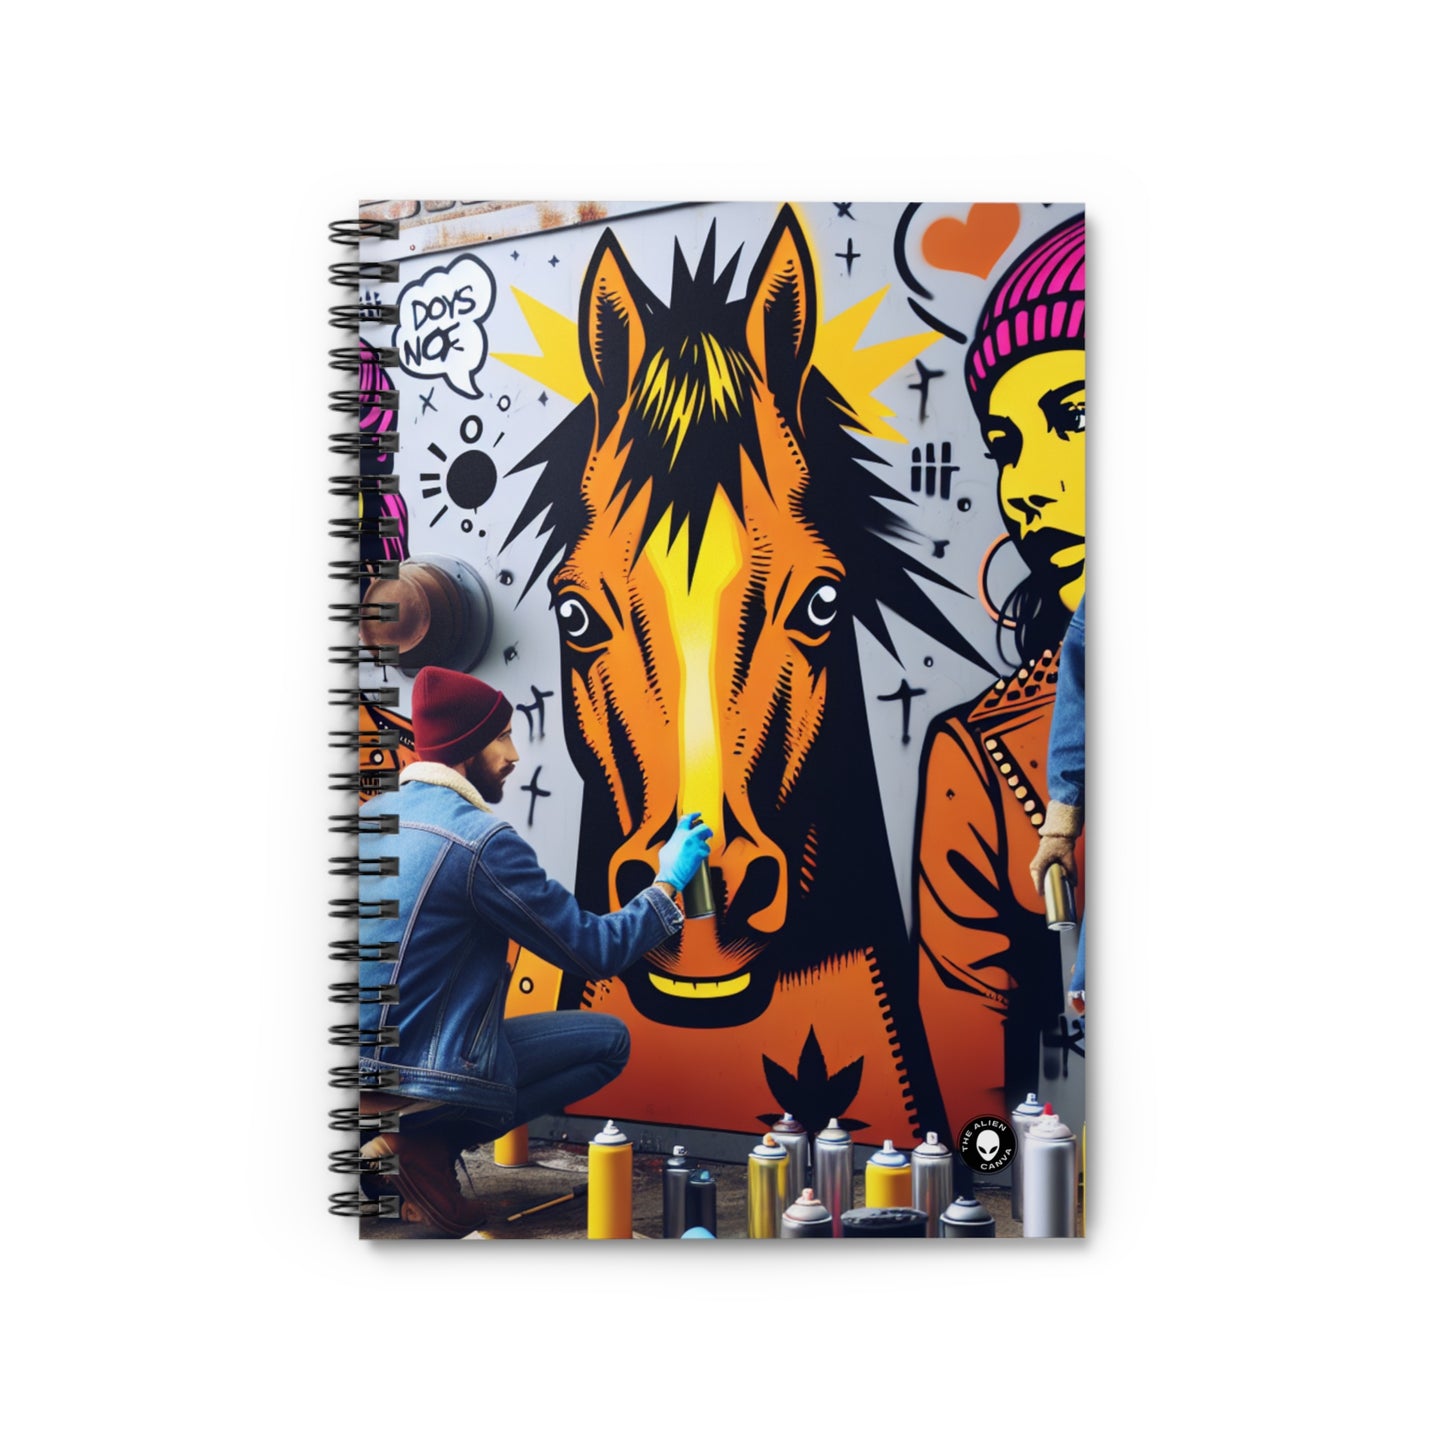 "Unidad en la diversidad: un vibrante mural de arte callejero" - Cuaderno de espiral The Alien (línea reglada) Arte callejero